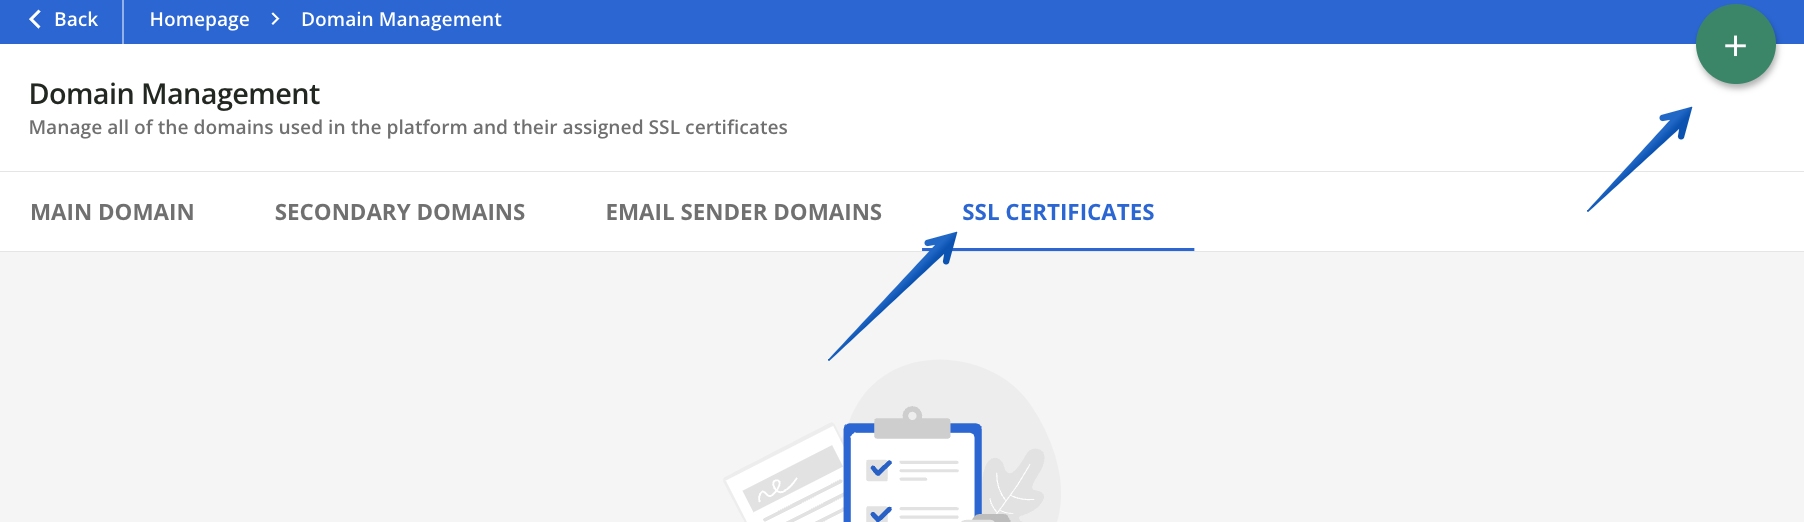 Domain Management - Adding an SSL Certificate.png